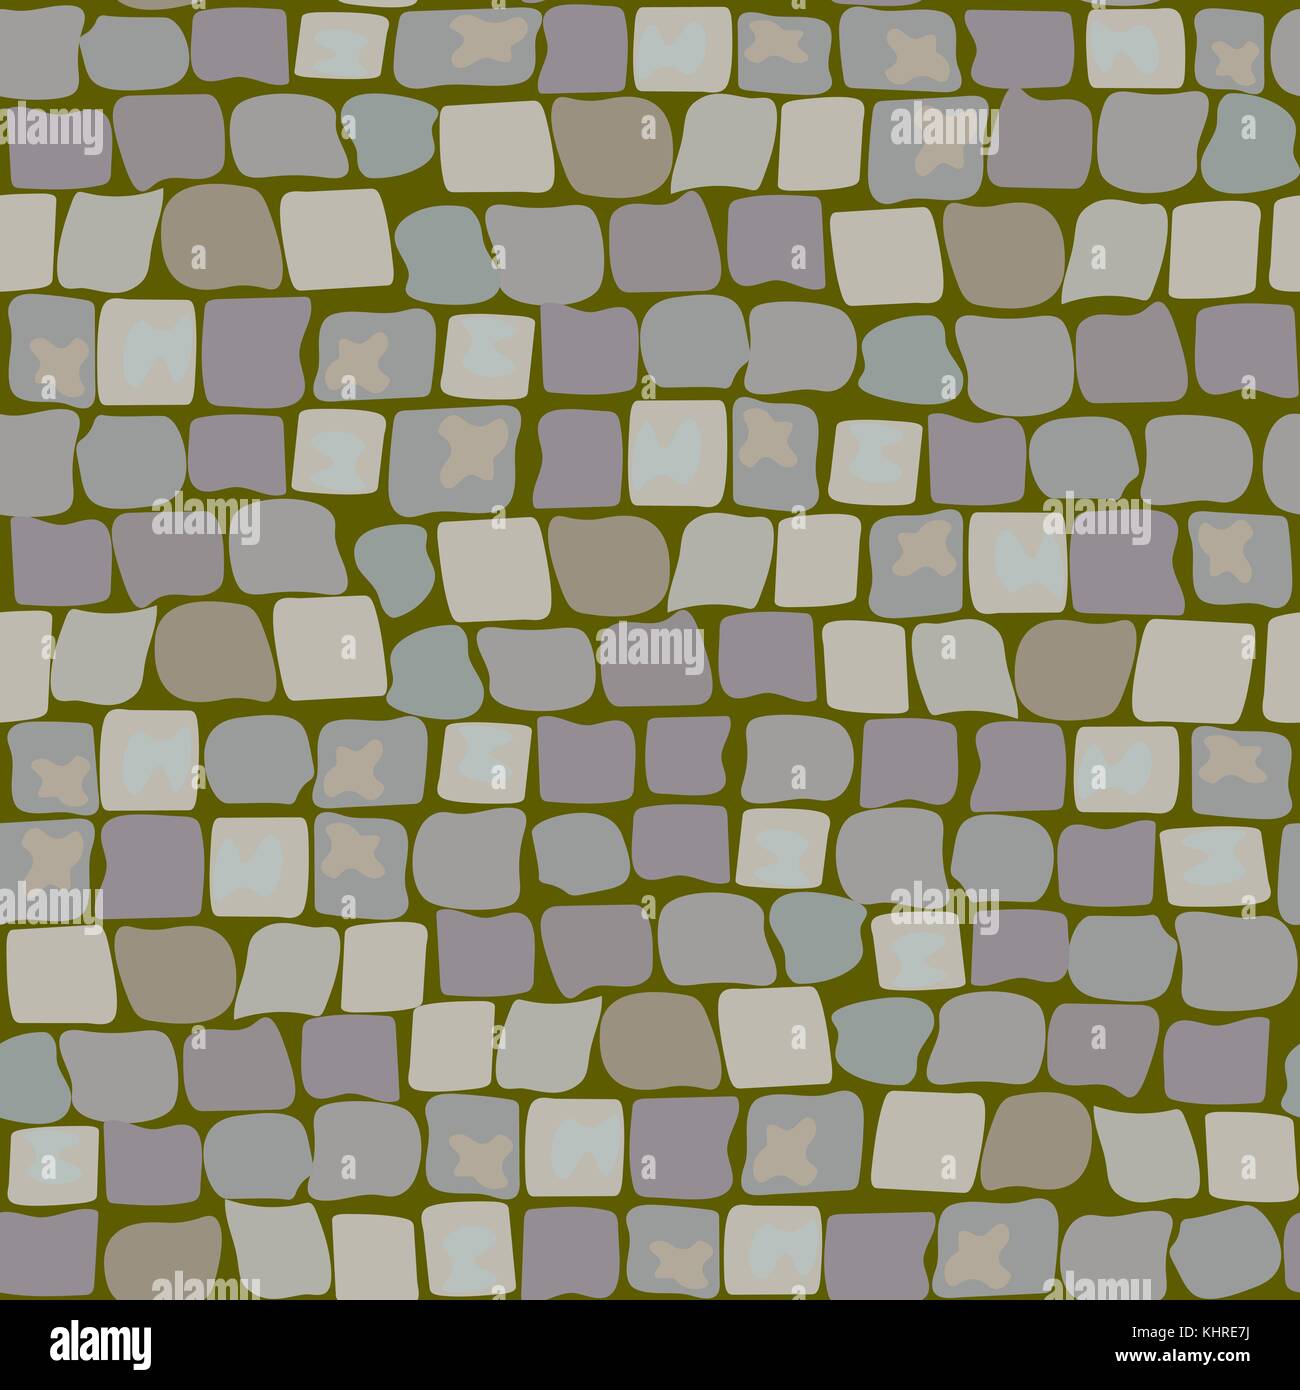 Vieux Pavés avec de la mousse et le gazon. La texture de la route modèle homogène. mur de pierre, rue pavée, avec l'herbe Illustration de Vecteur